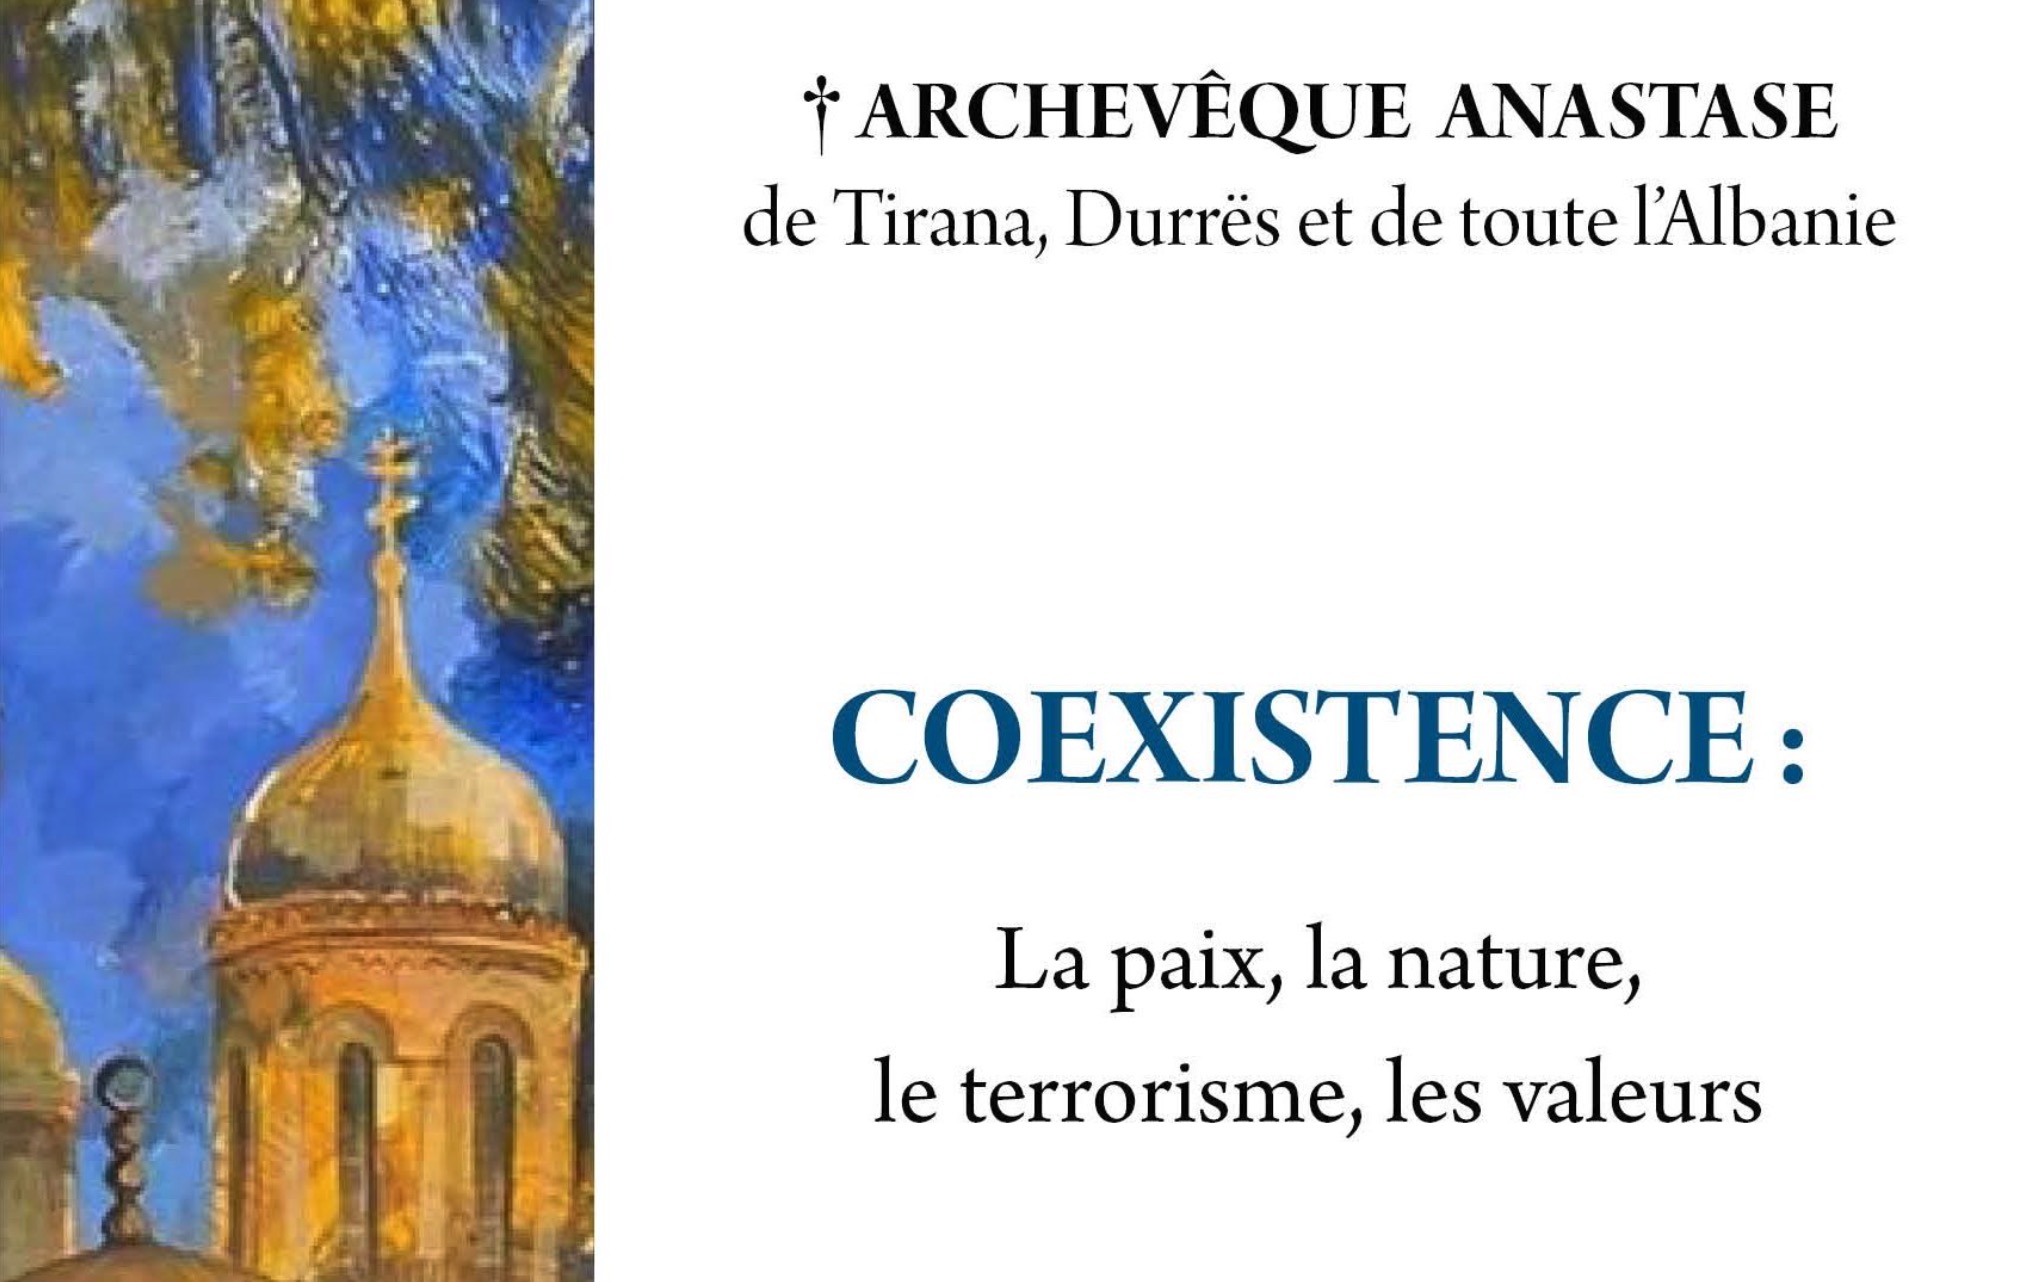 Vient de paraître aux Éditions apostolia : « coexistence : la paix, la nature, la pauvreté, le terrorisme, les valeurs » par l’archevêque anastase de tirana